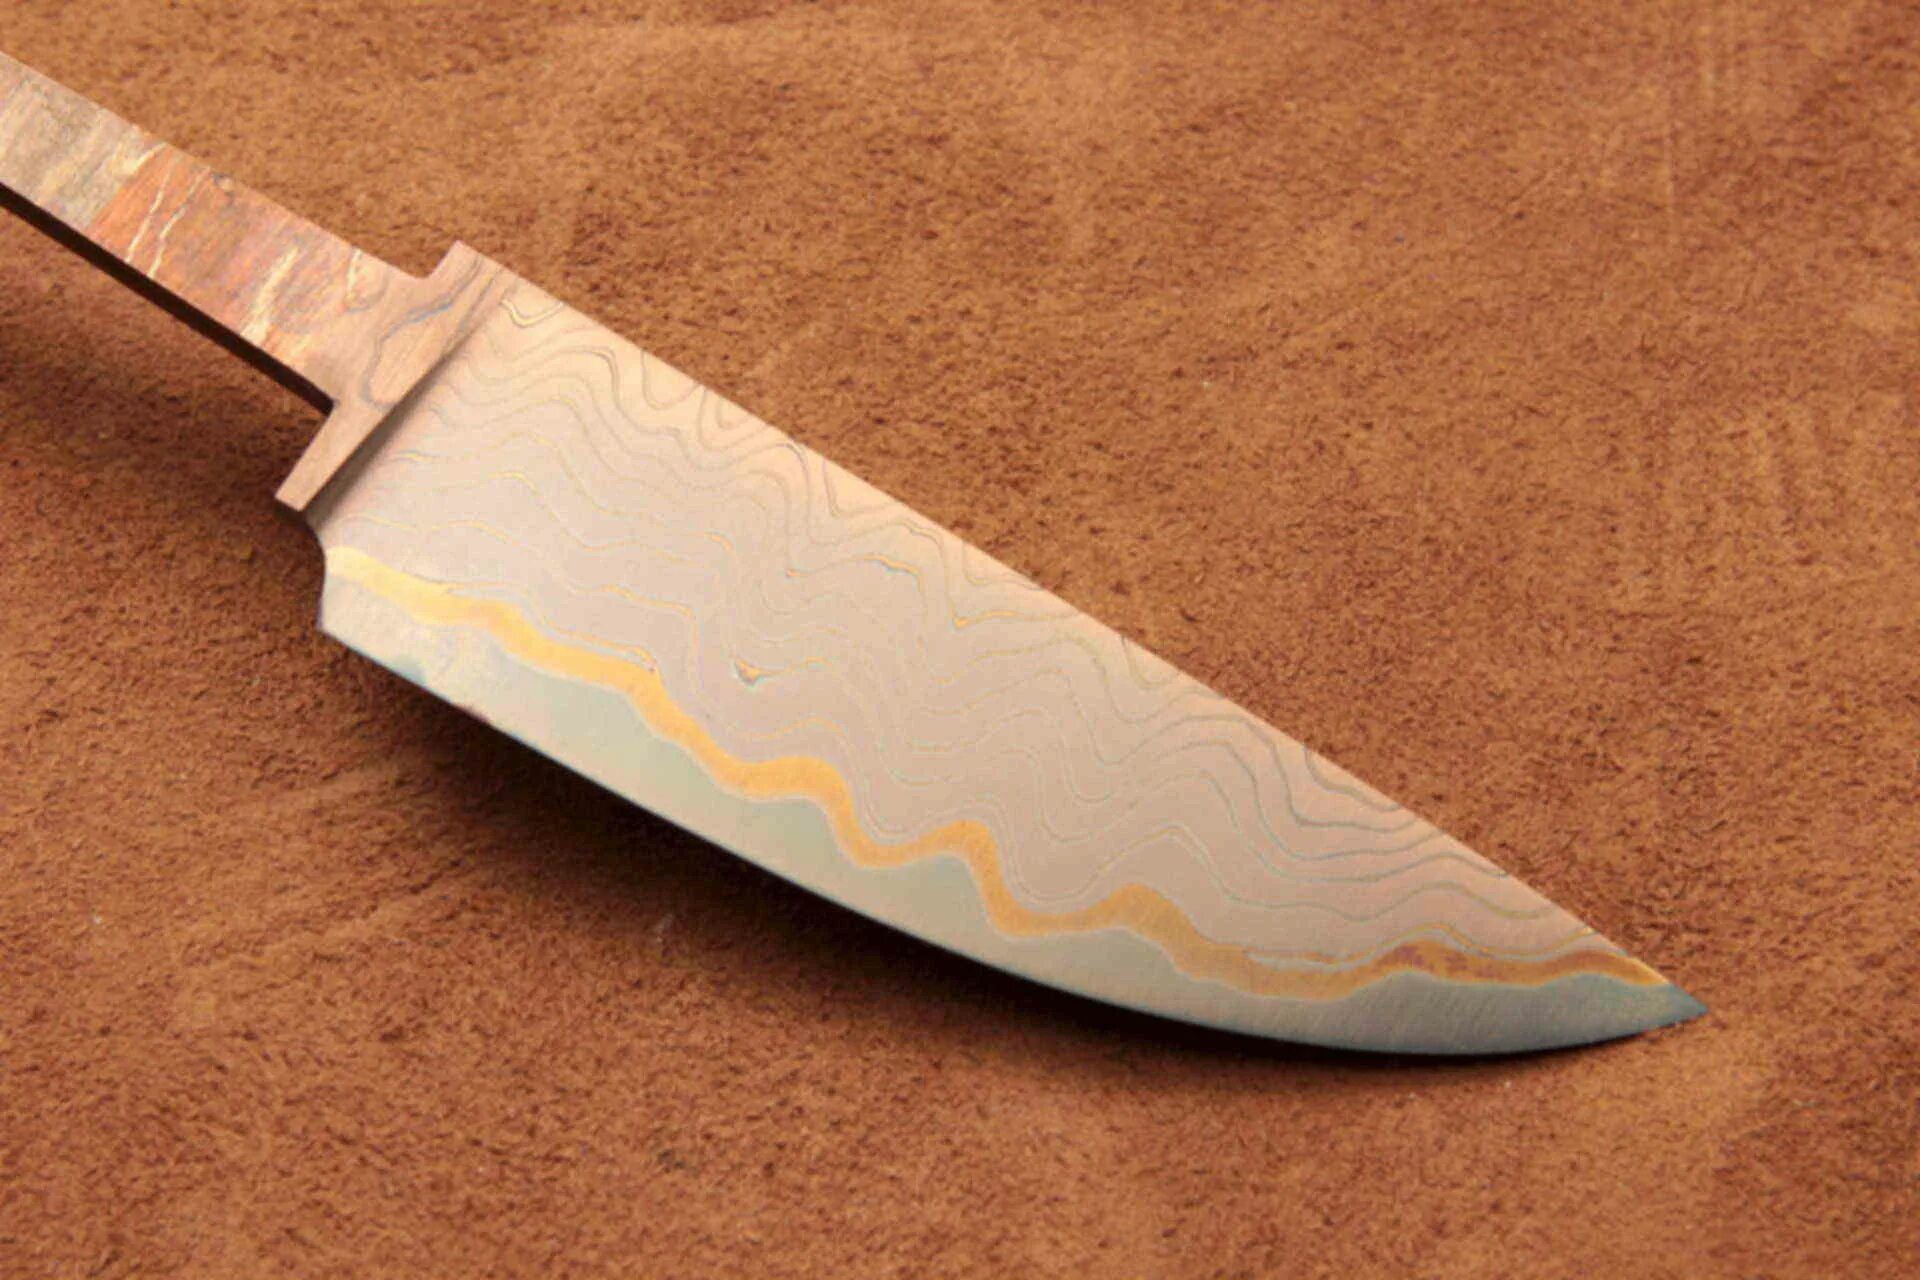 Ламинированная сталь. Ламинат клинок vg10. Нож ламинатная сталь. Нож с широким лезвием. Нож для ламината.